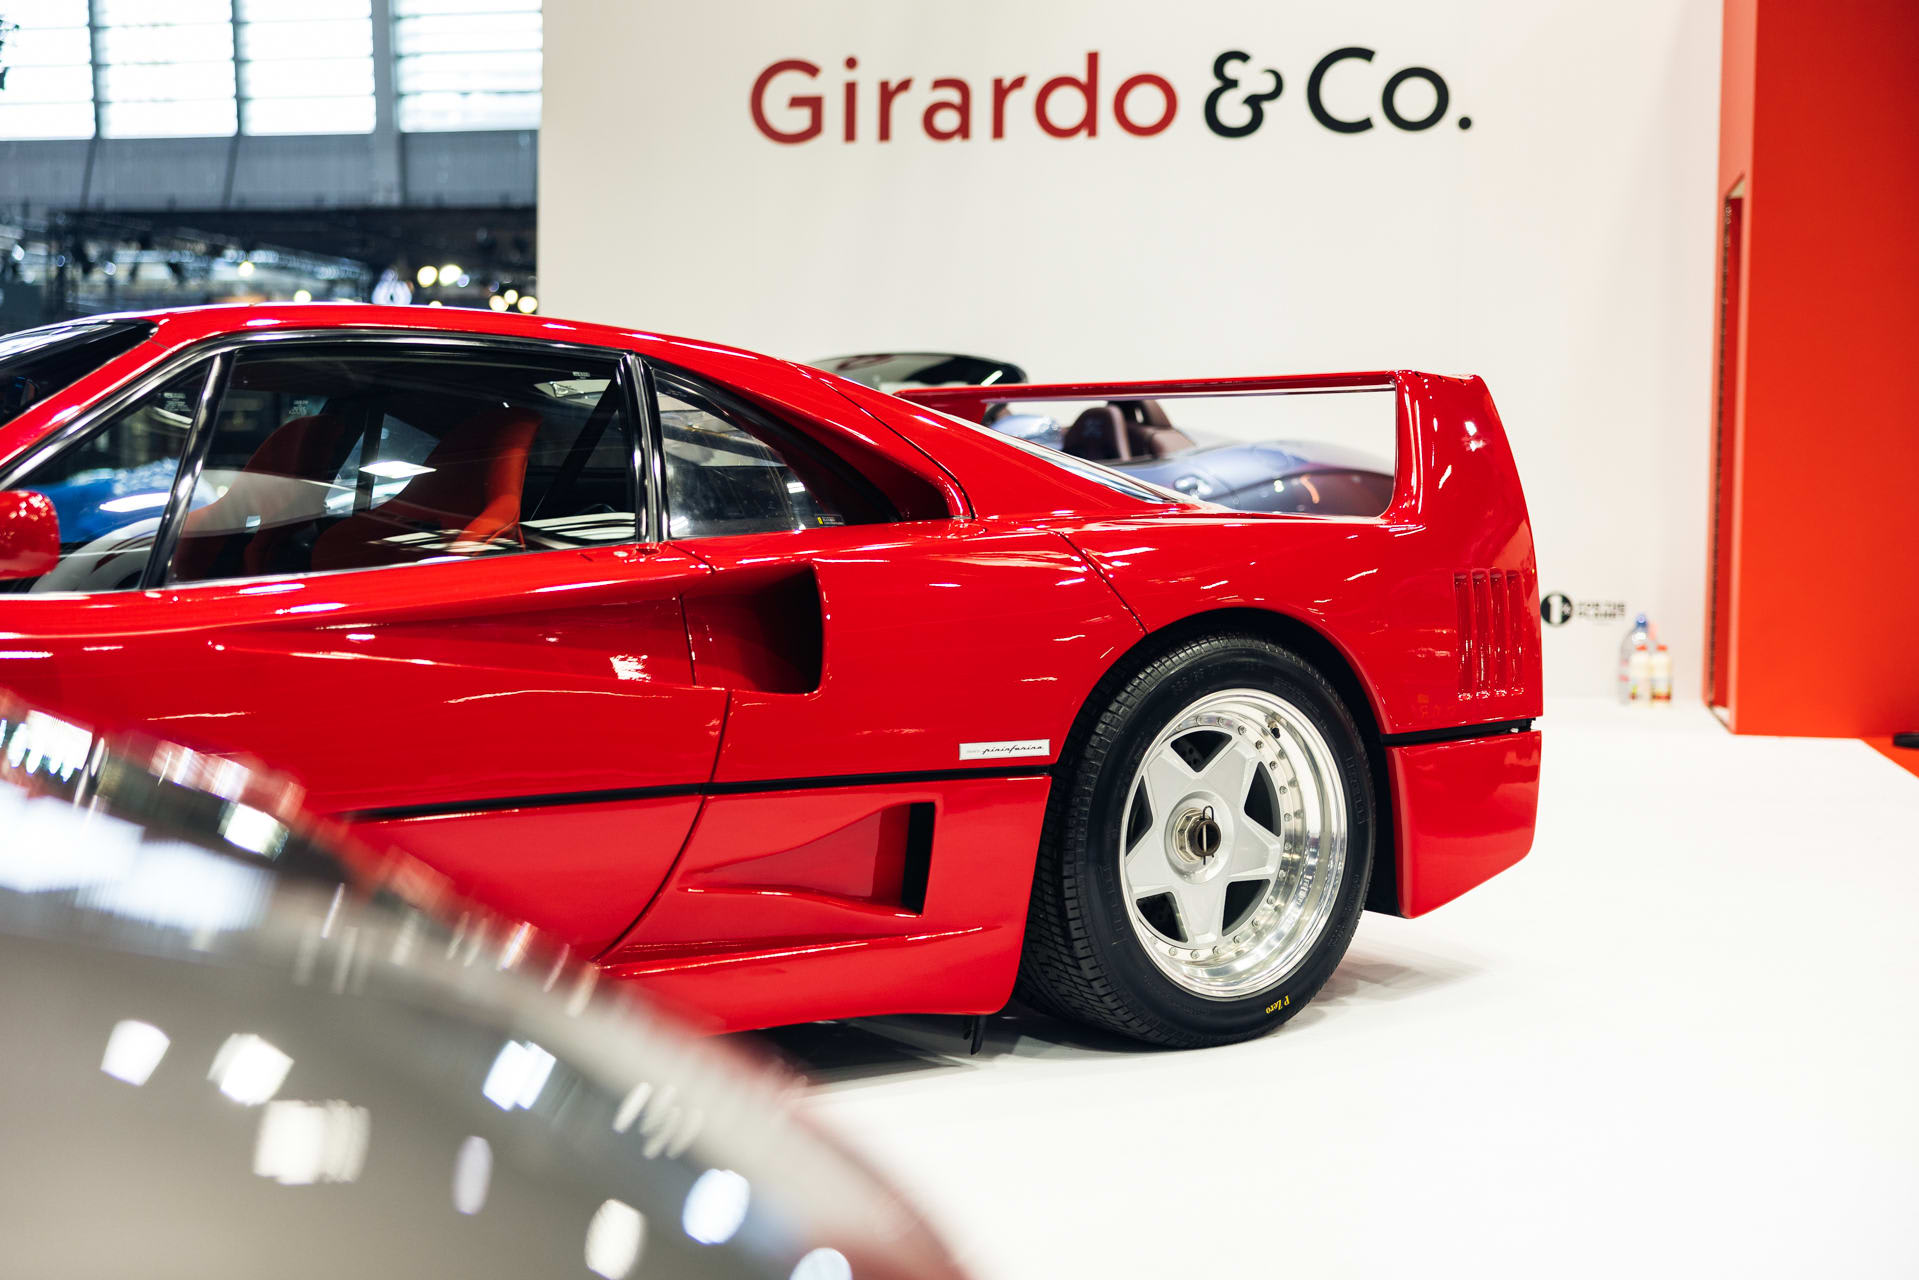 1992 Ferrari F40 | Girardo & Co